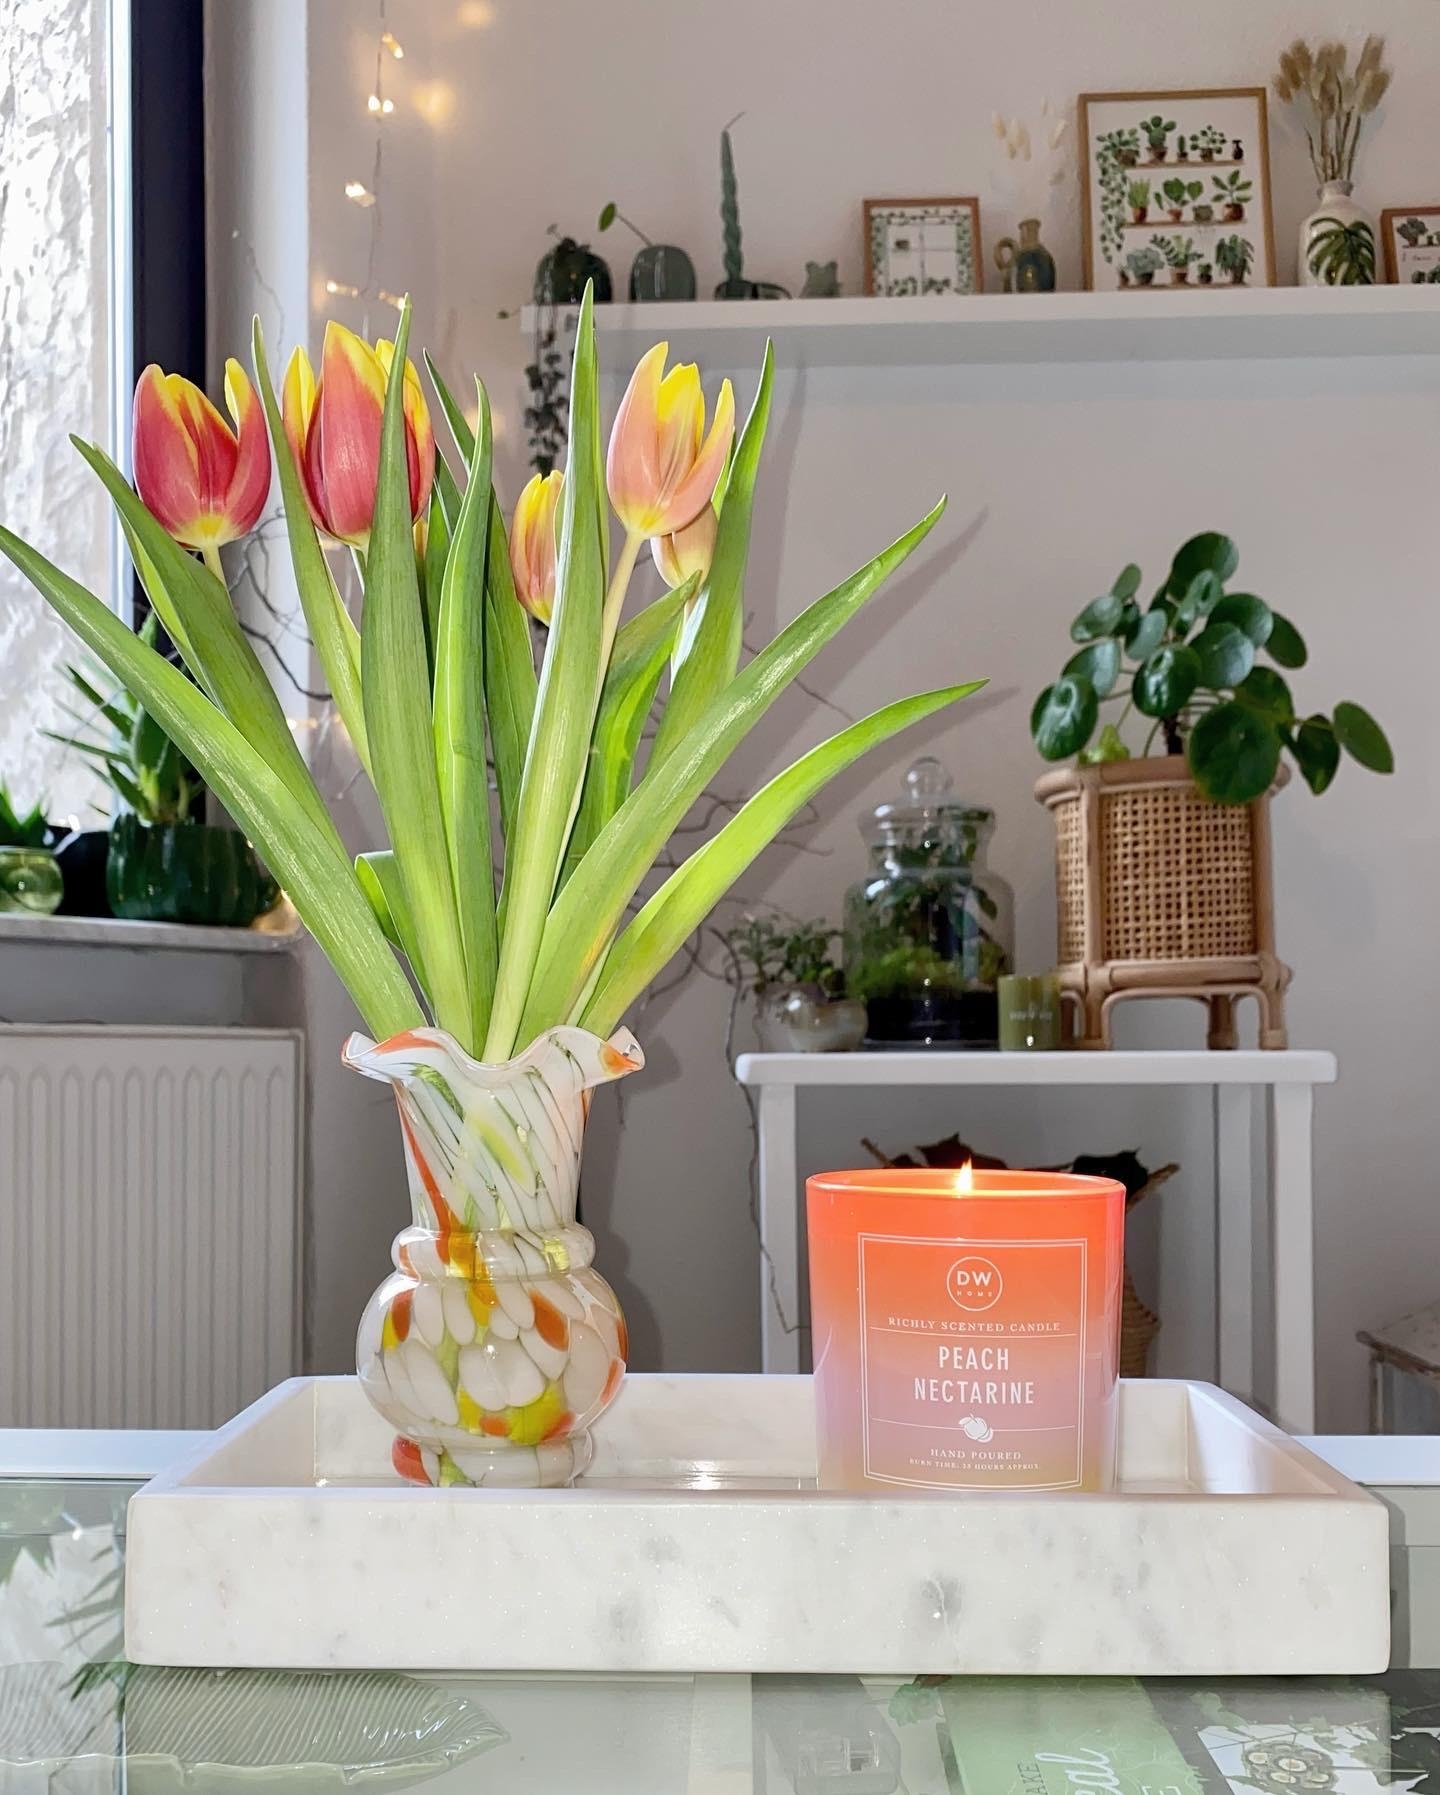 Ein bisschen Farbe gegen das graue Wetter! #tulpen #kerzen #marmor #deko #wohnzimmer #pflanzen 